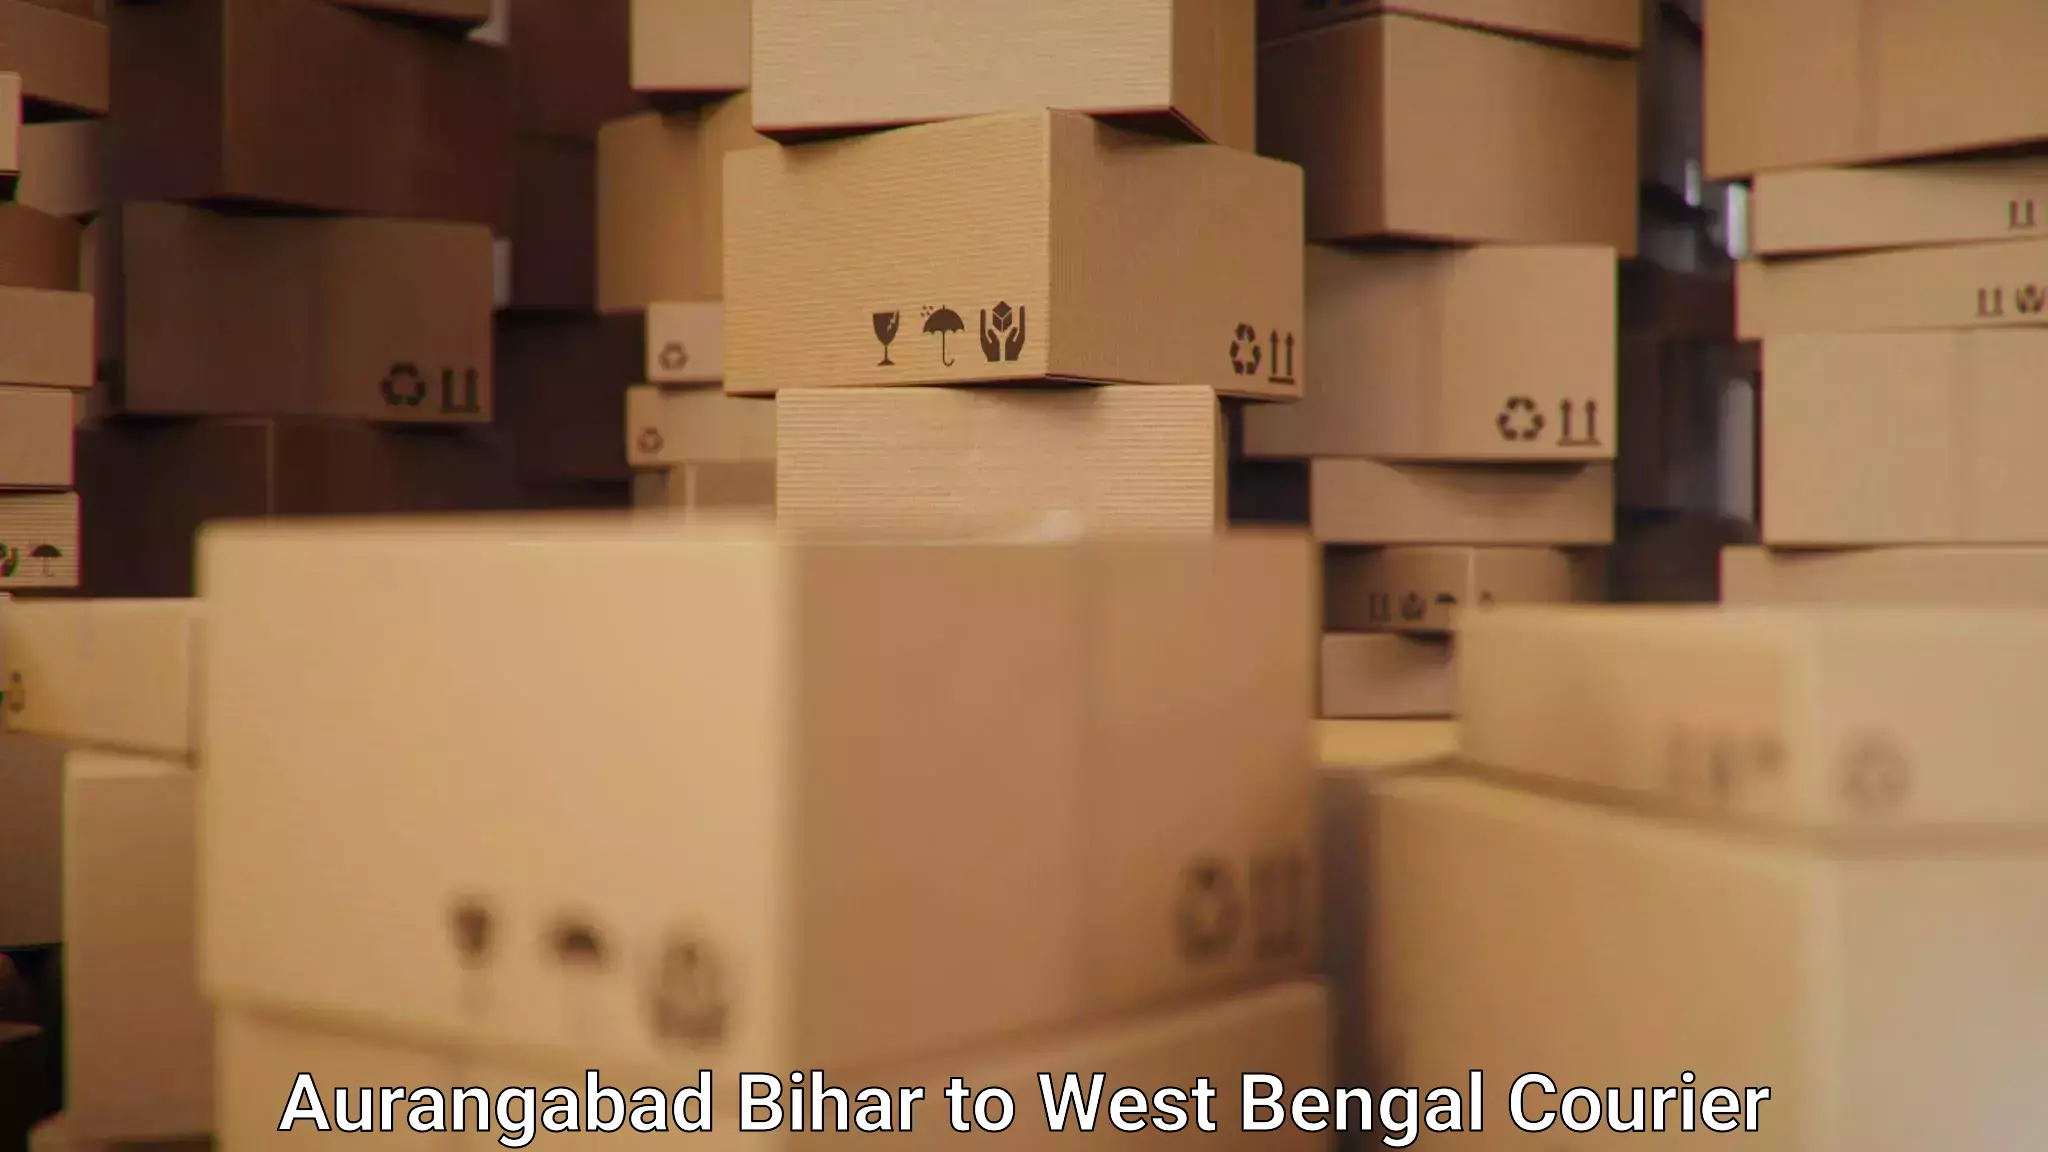 State-of-the-art courier technology Aurangabad Bihar to Mathurapur